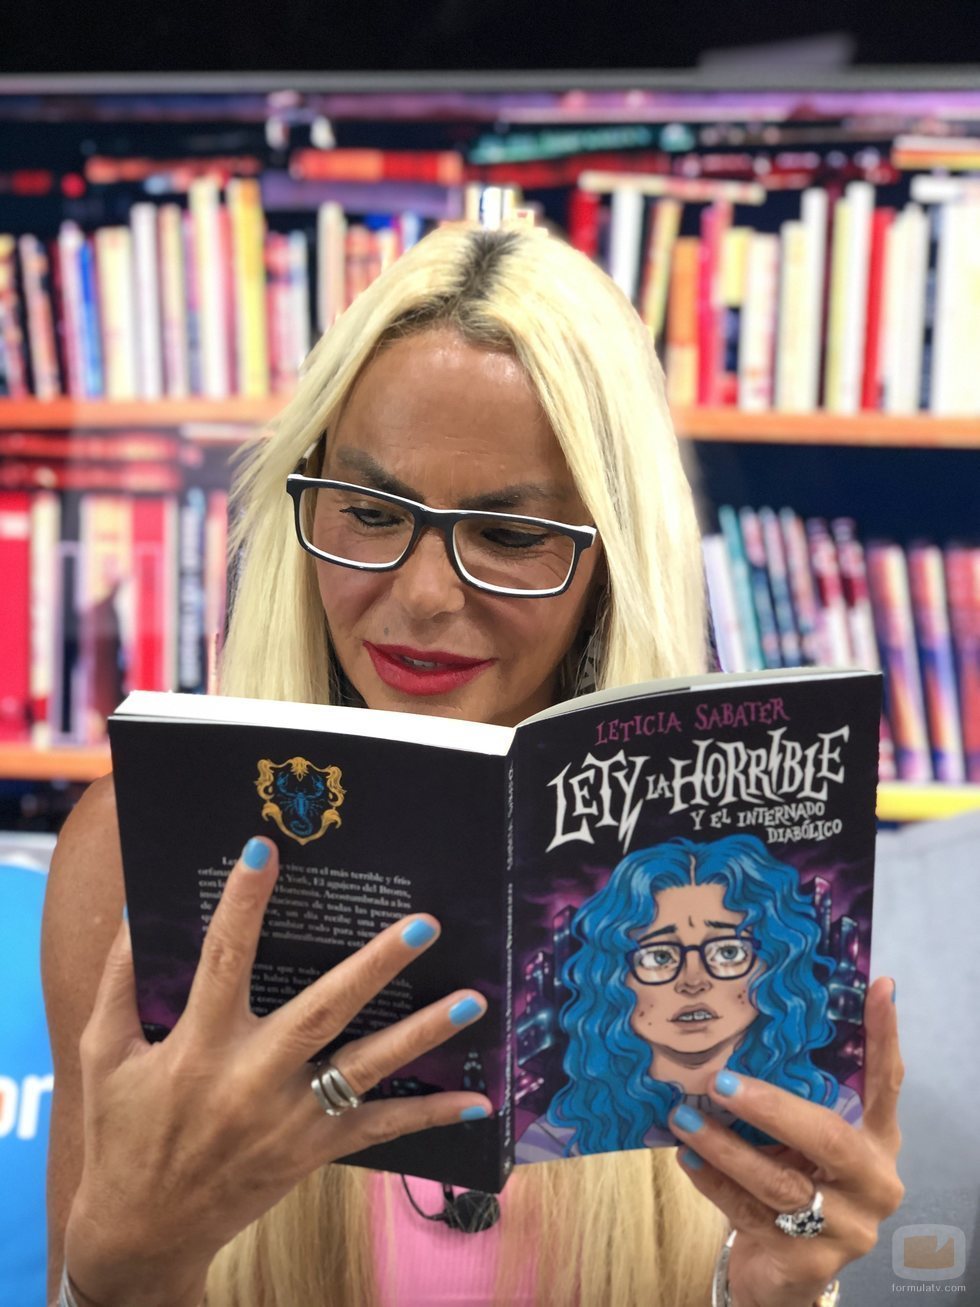 Leticia Sabater lee su novela "Lety La Horrible y el internado diabólico"